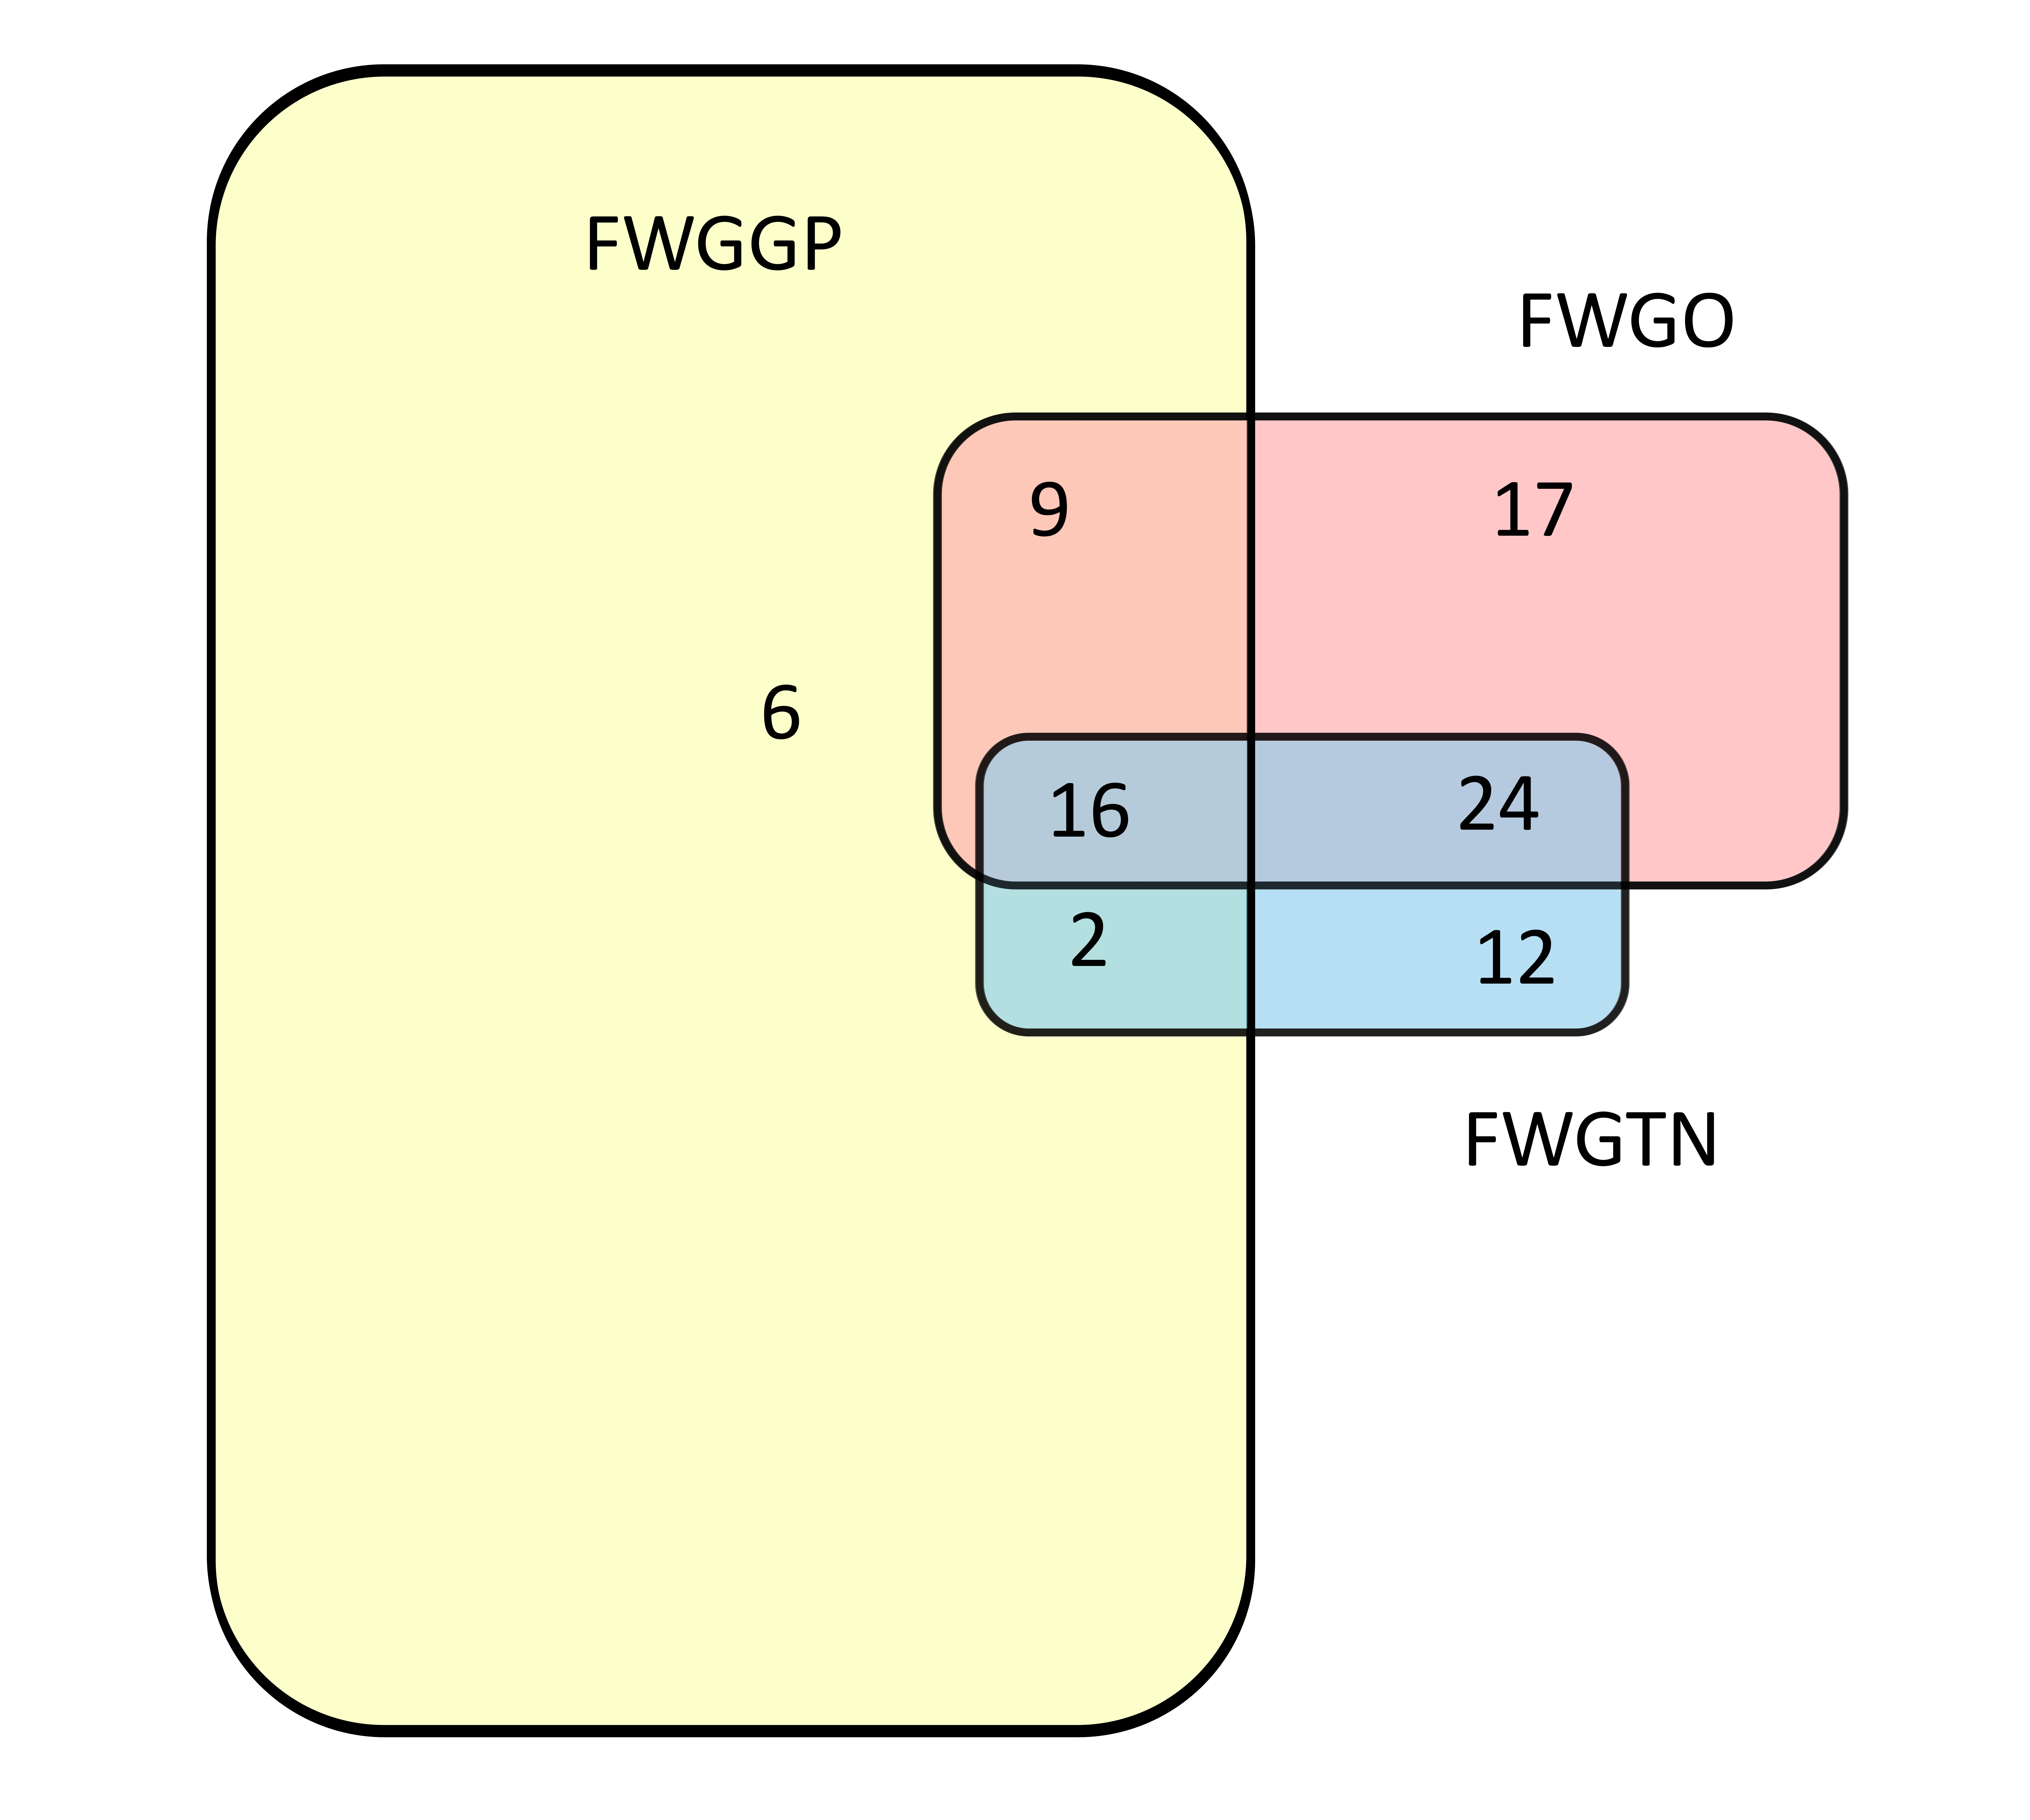 FWGGP Venn diagram